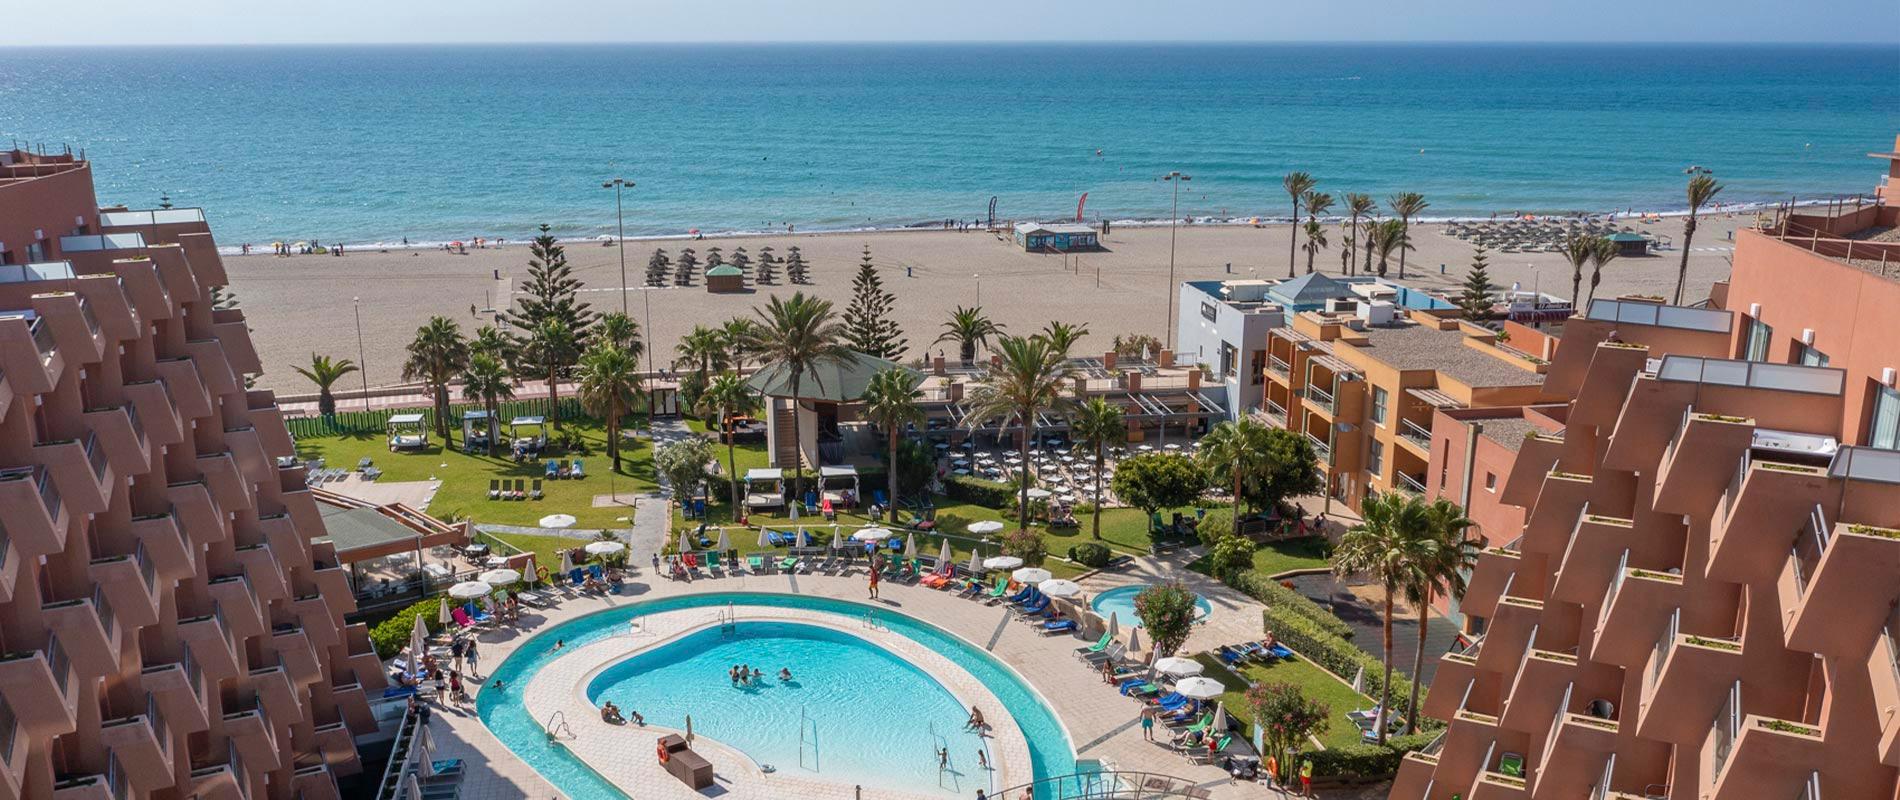 Protur Roquetas Hotel & Spa - 5 Estrellas - Roquetas de Mar Almería